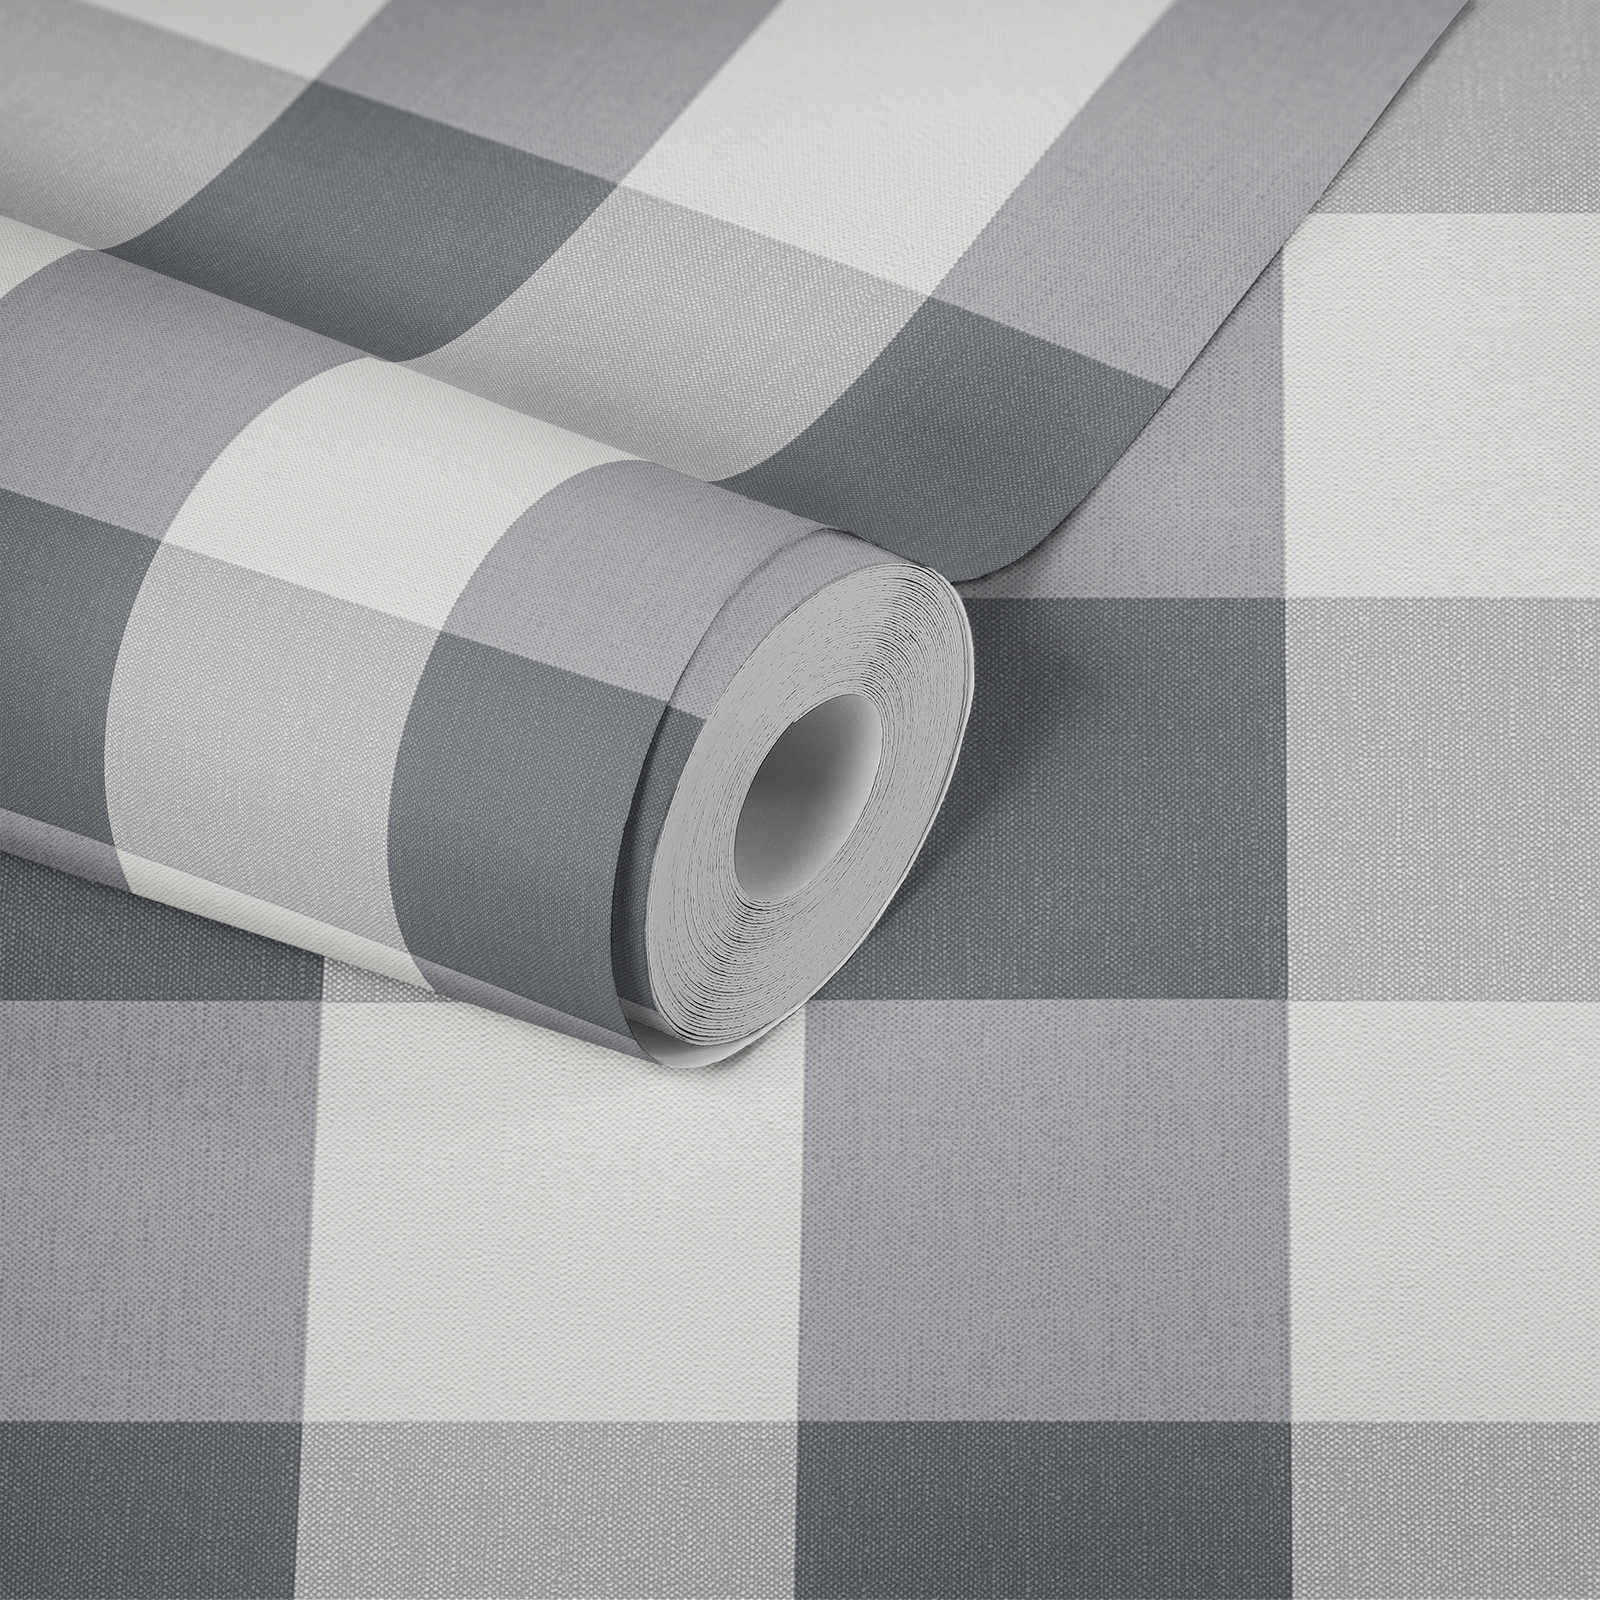             Geruit behang met textiellook in harmonieuze kleuren - wit, grijs
        